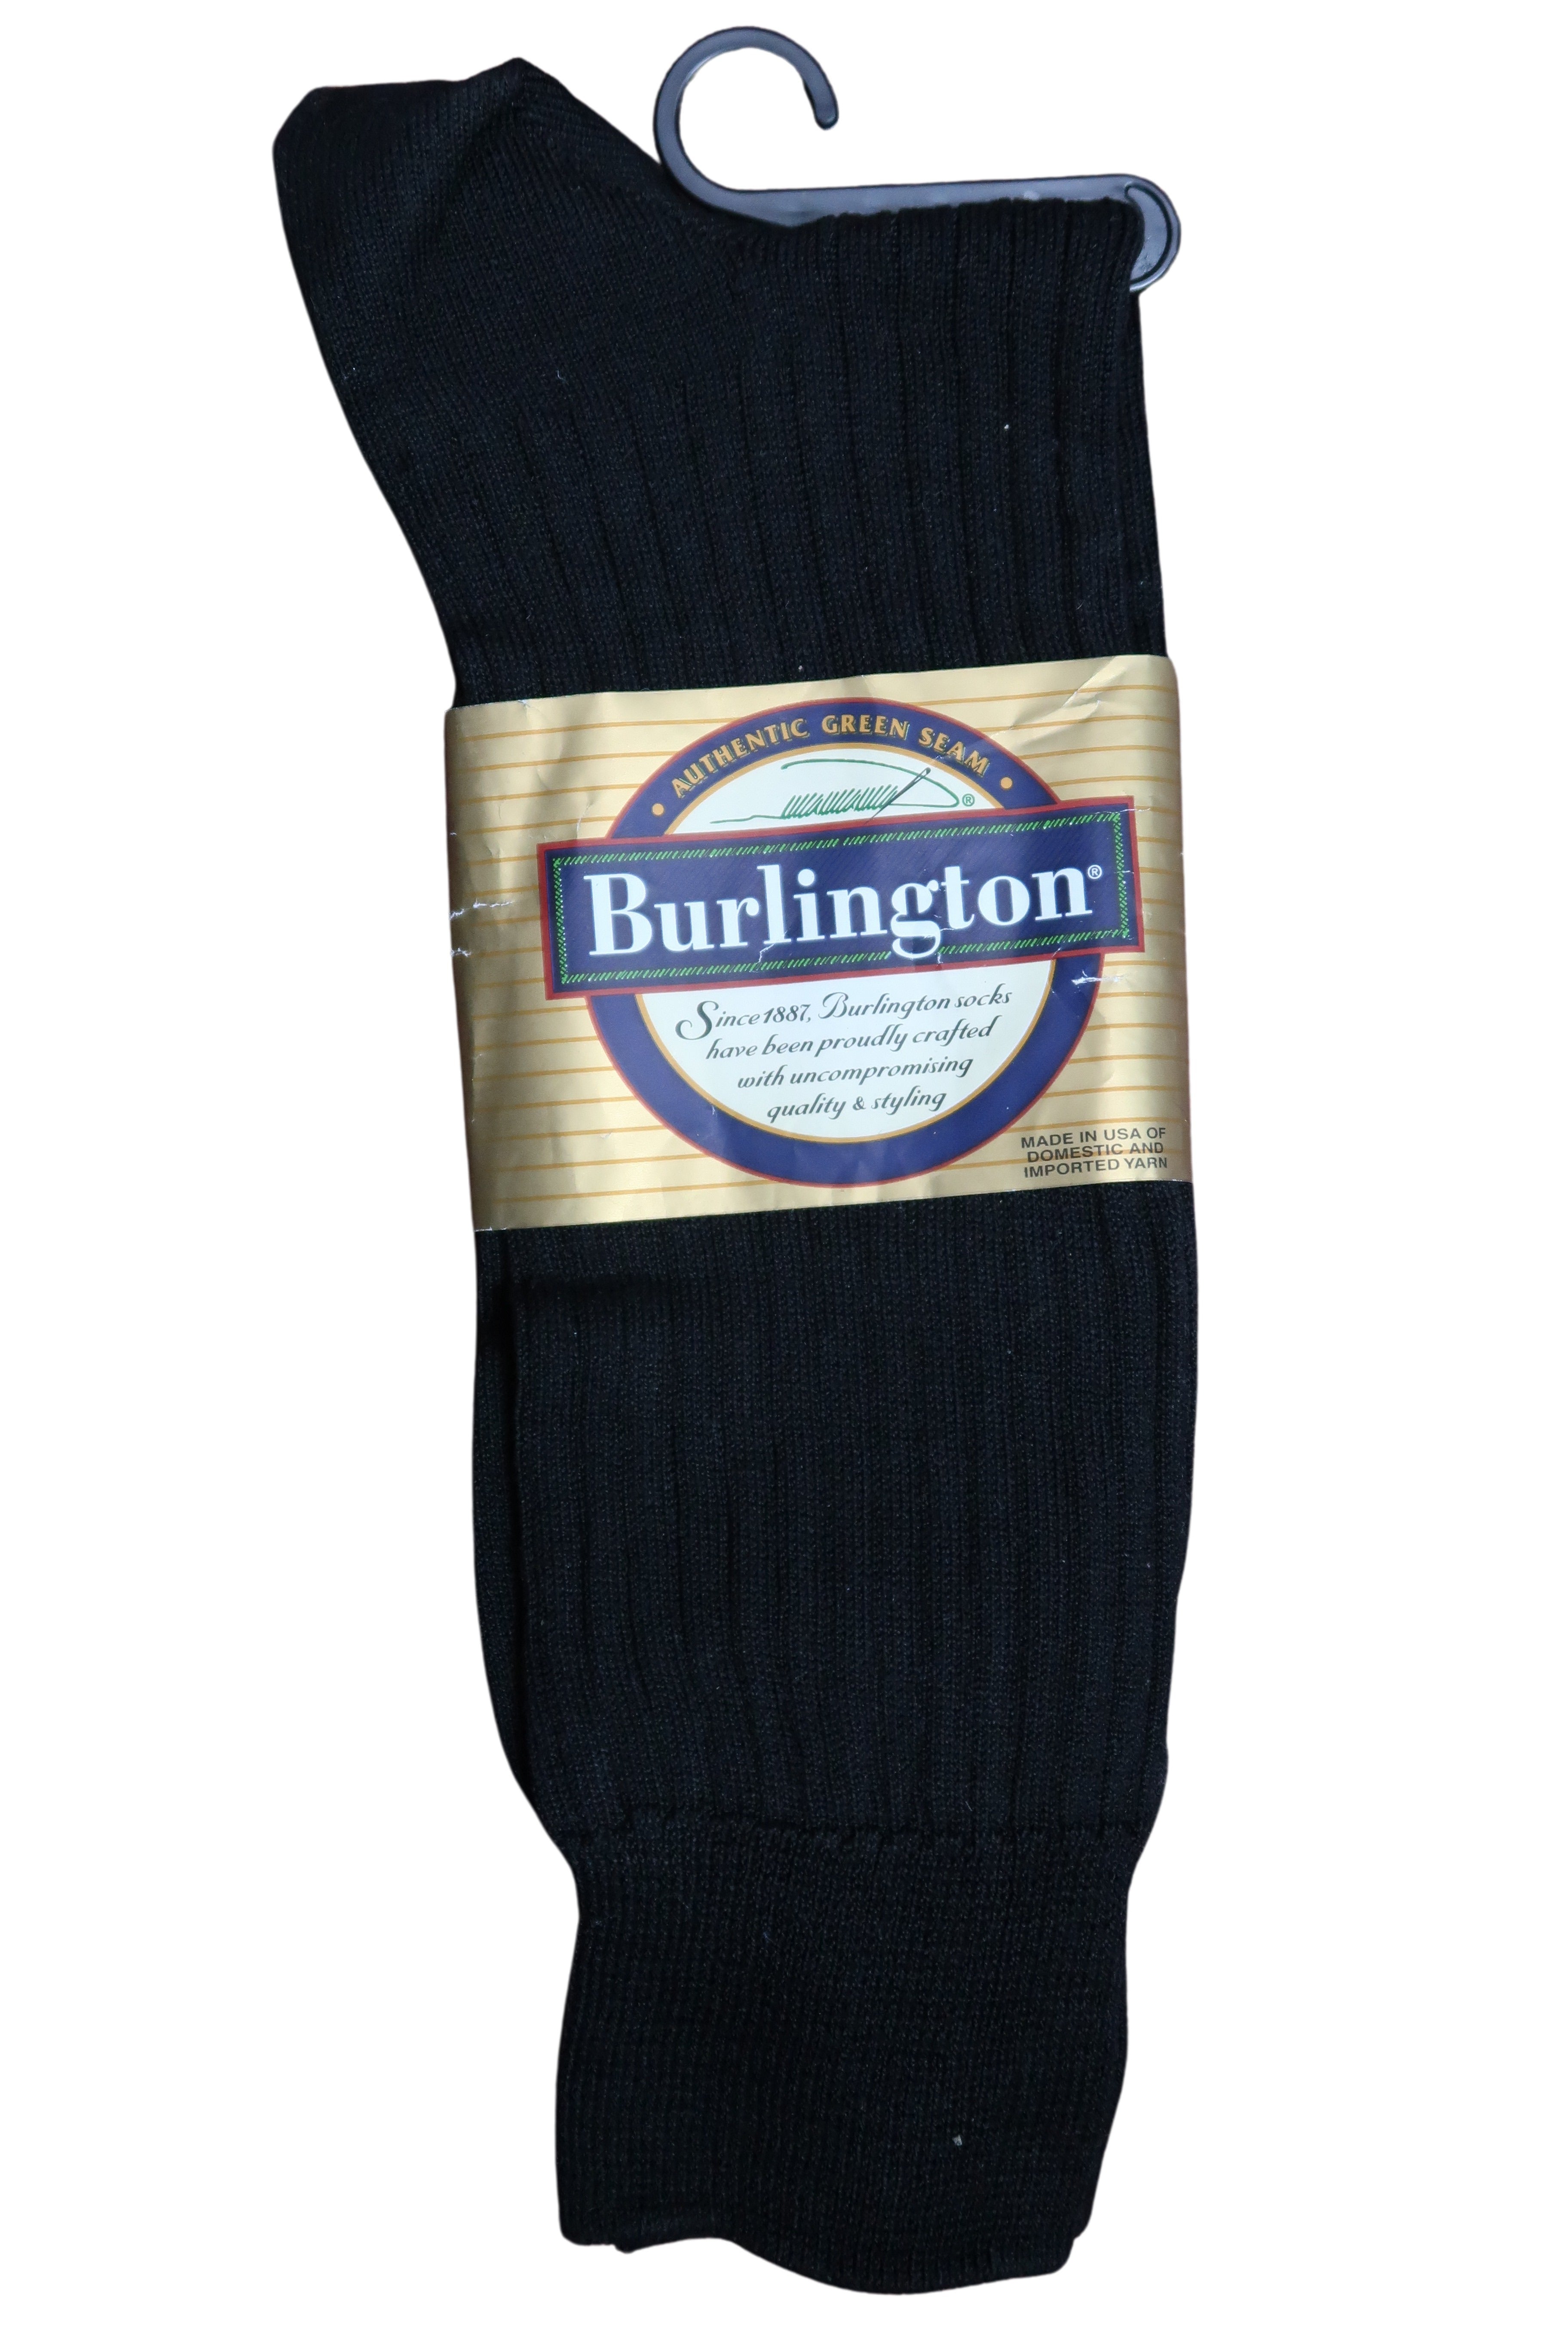 Burlington Mens Black 100% Cotton Socks